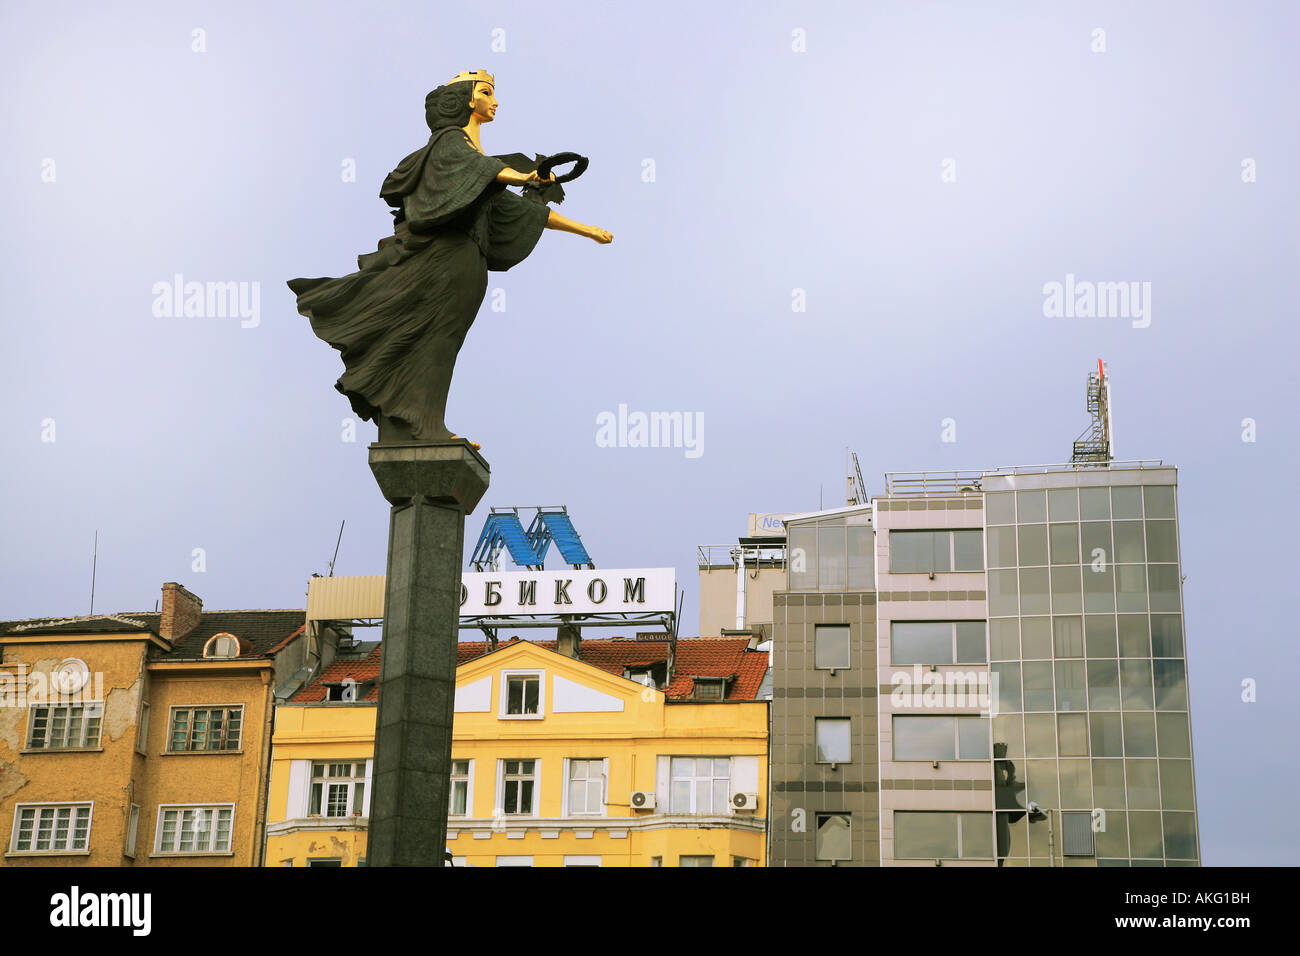 La statue de Sofia de la garde et de la protection de la ville de Sofia en Bulgarie les symboles représentent la gloire et la sagesse Banque D'Images